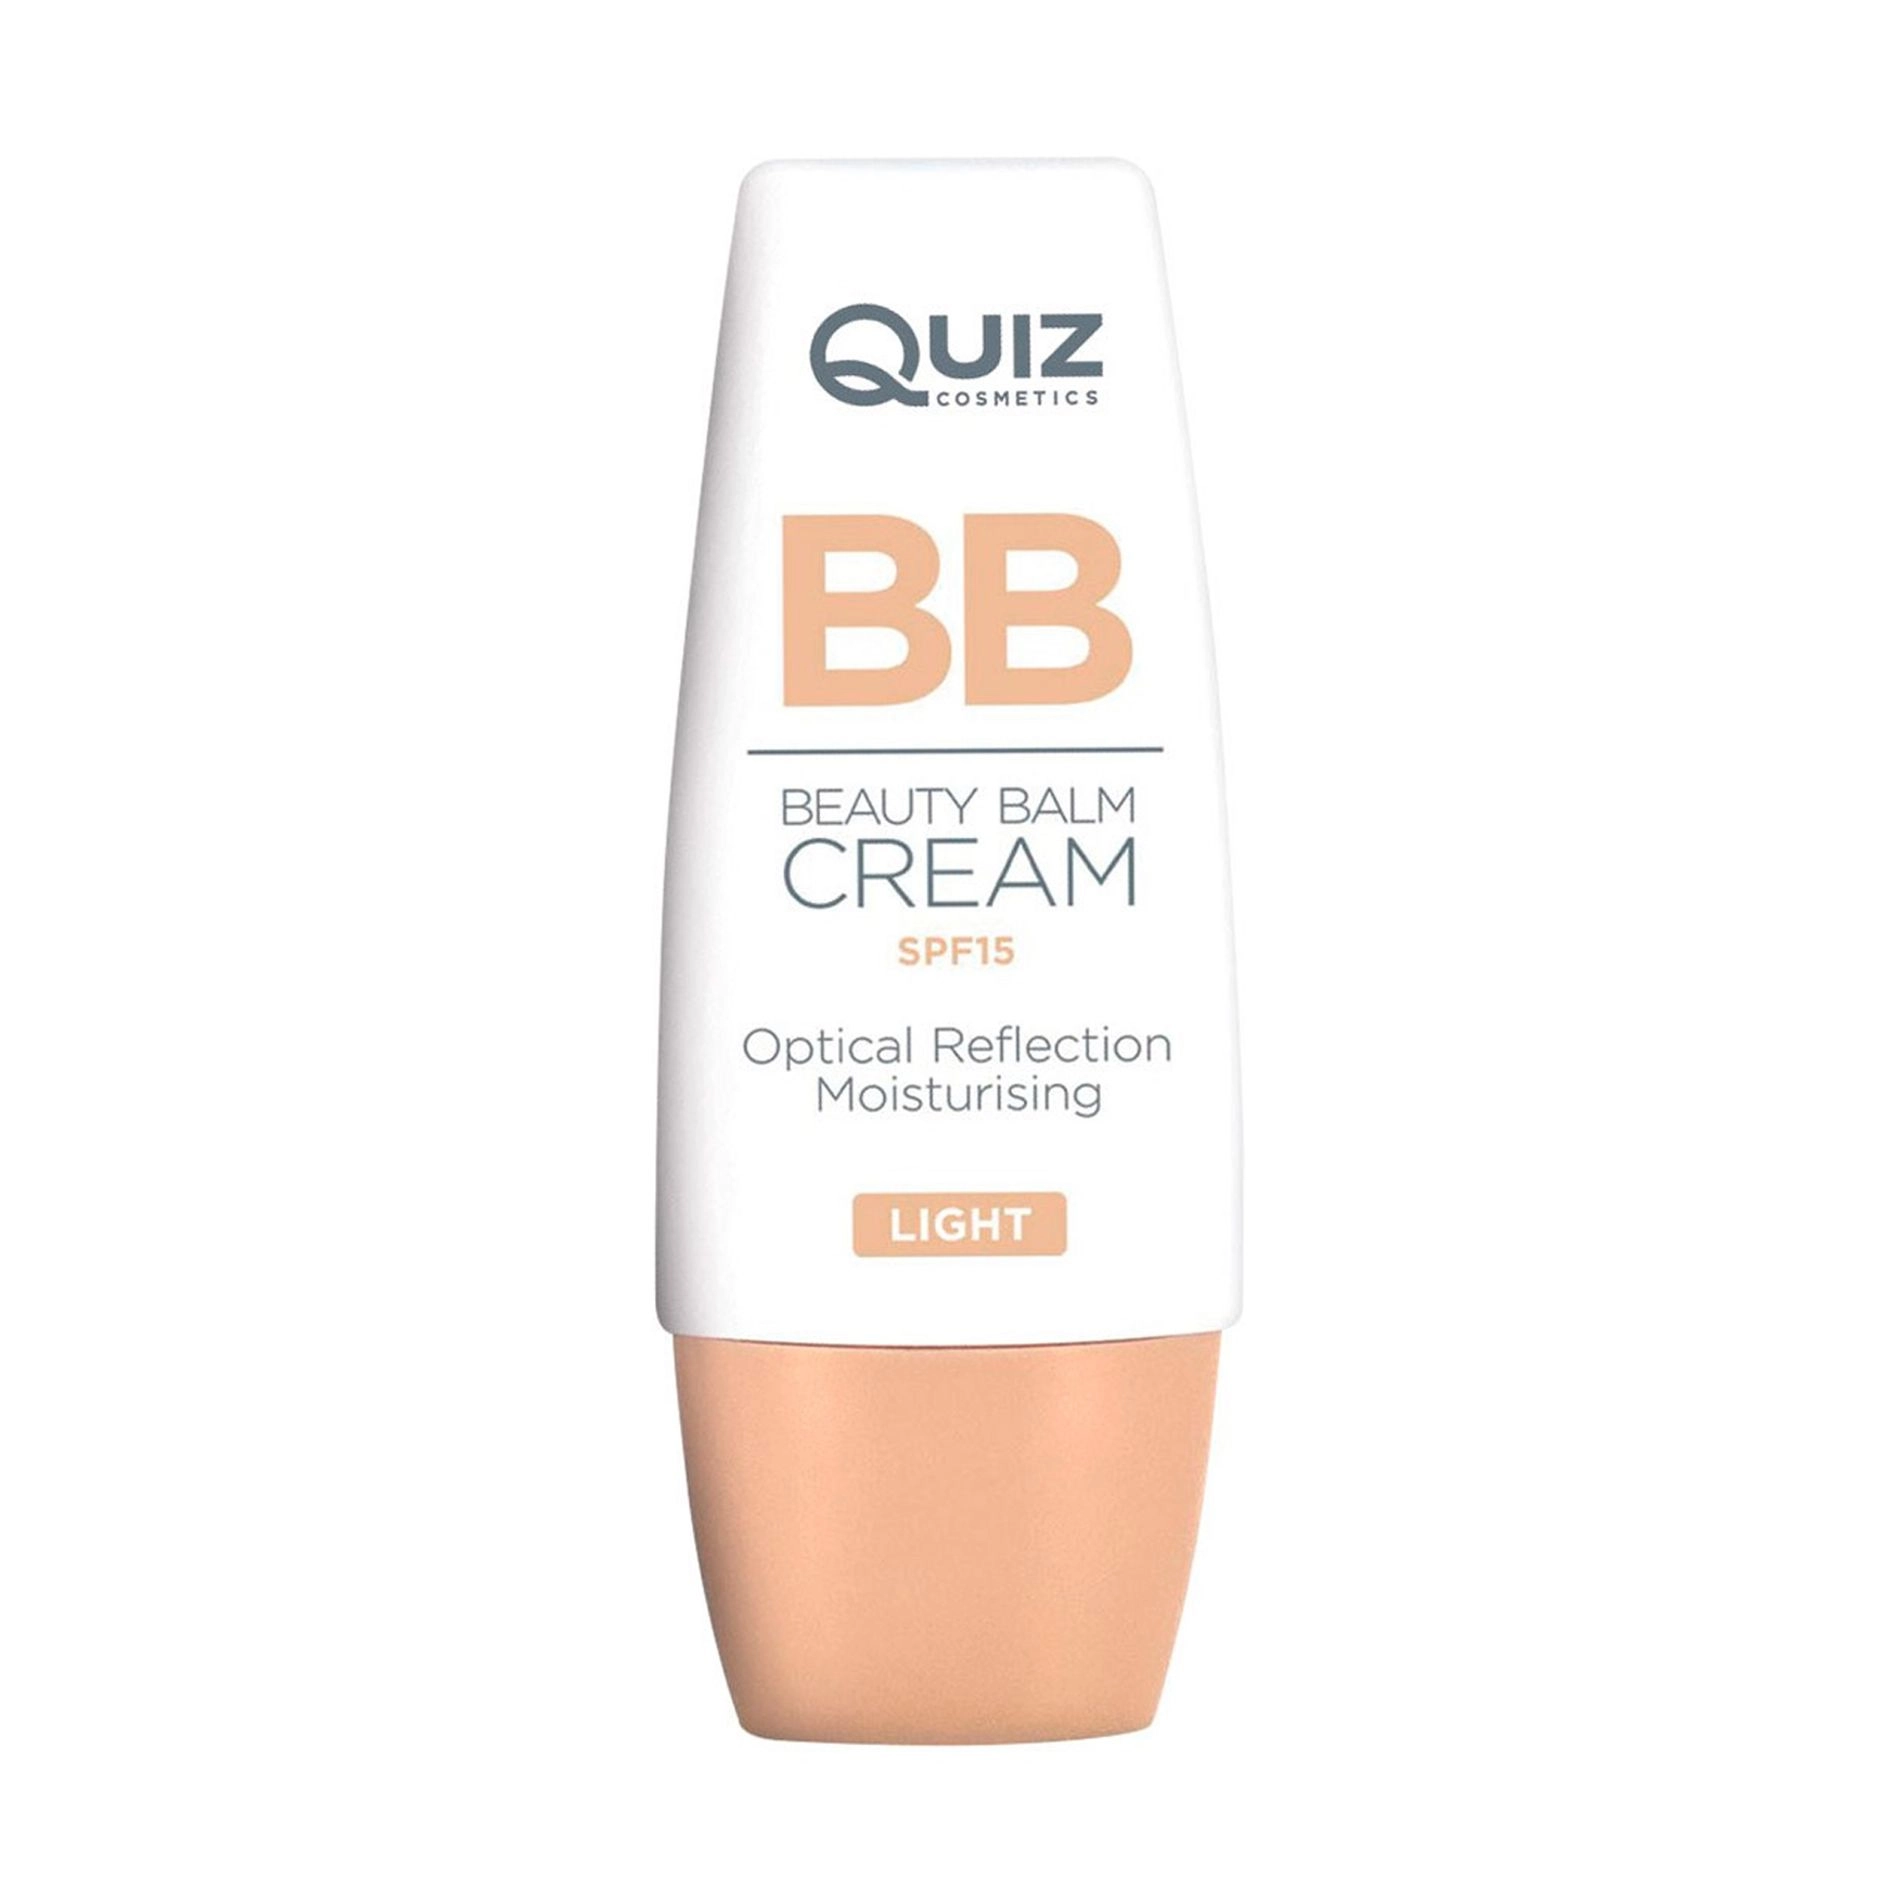 Quiz Тональный BB-крем для лица Cosmetics BB Beauty Balm Cream SPF15, 01 Light, 30 мл - фото N1